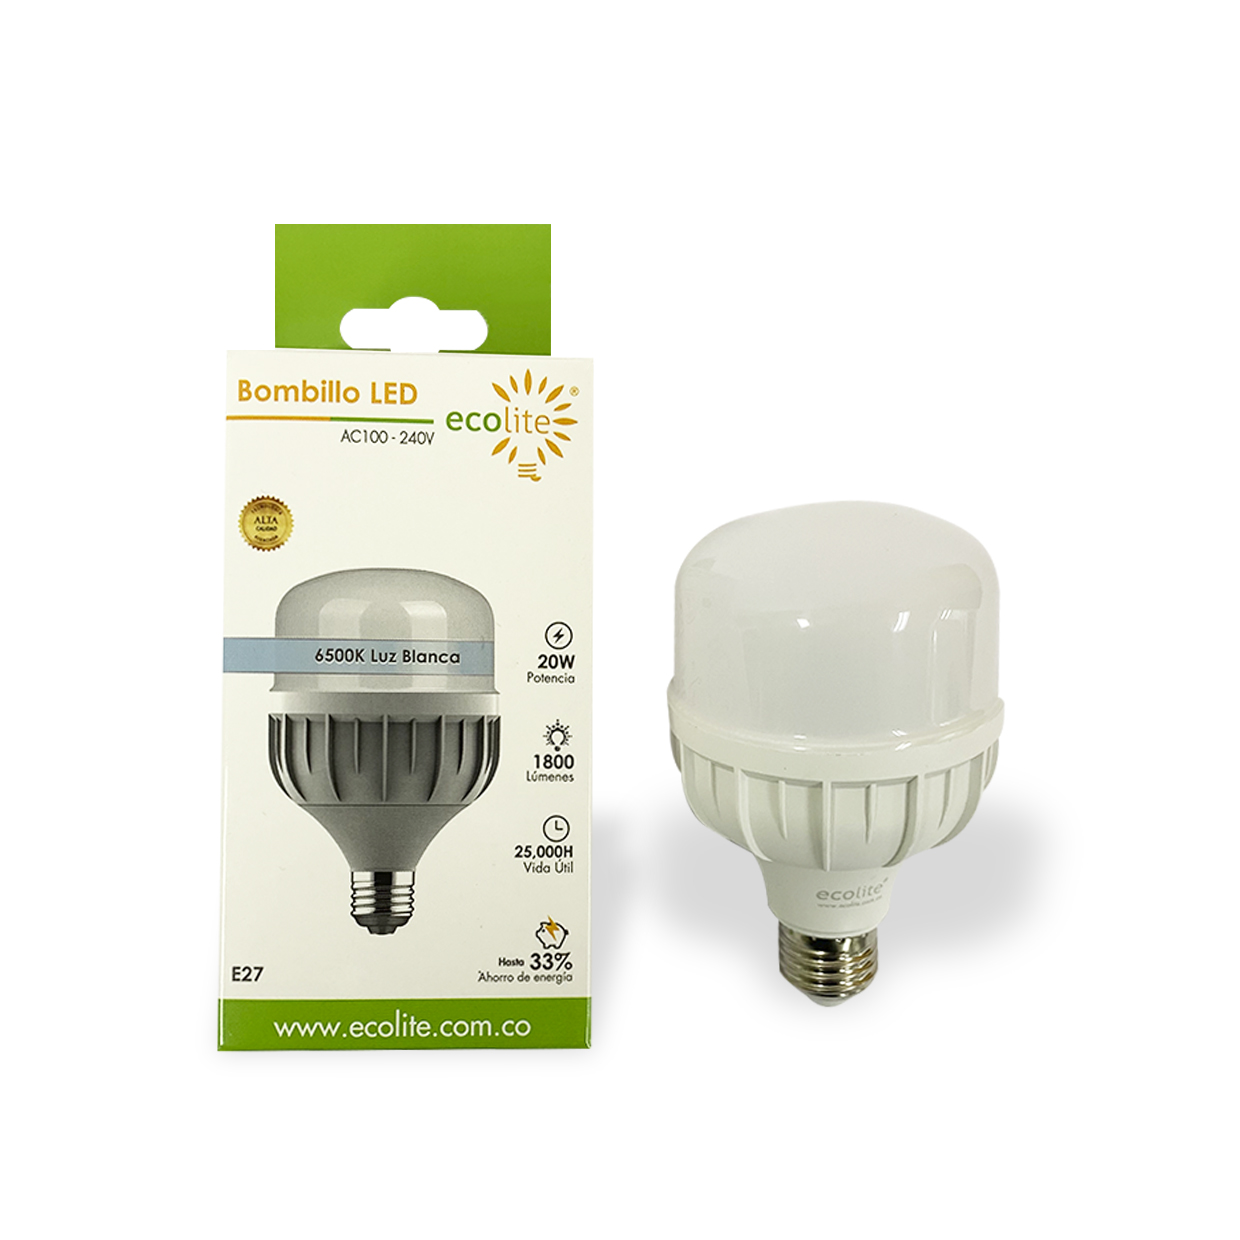 Ahorrando energía y dinero con bombillos LED recargables